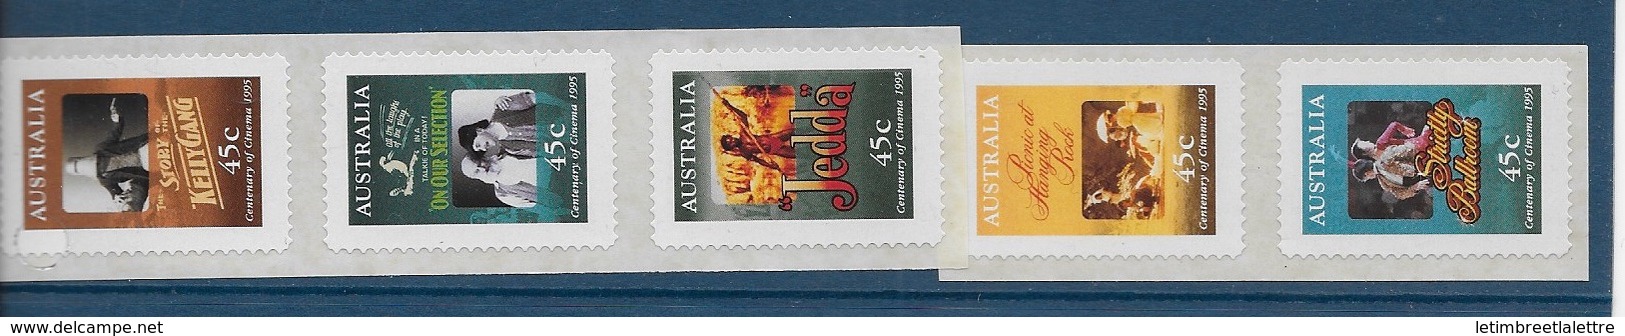 Australie N°1445 à 1449**adhésif - Mint Stamps